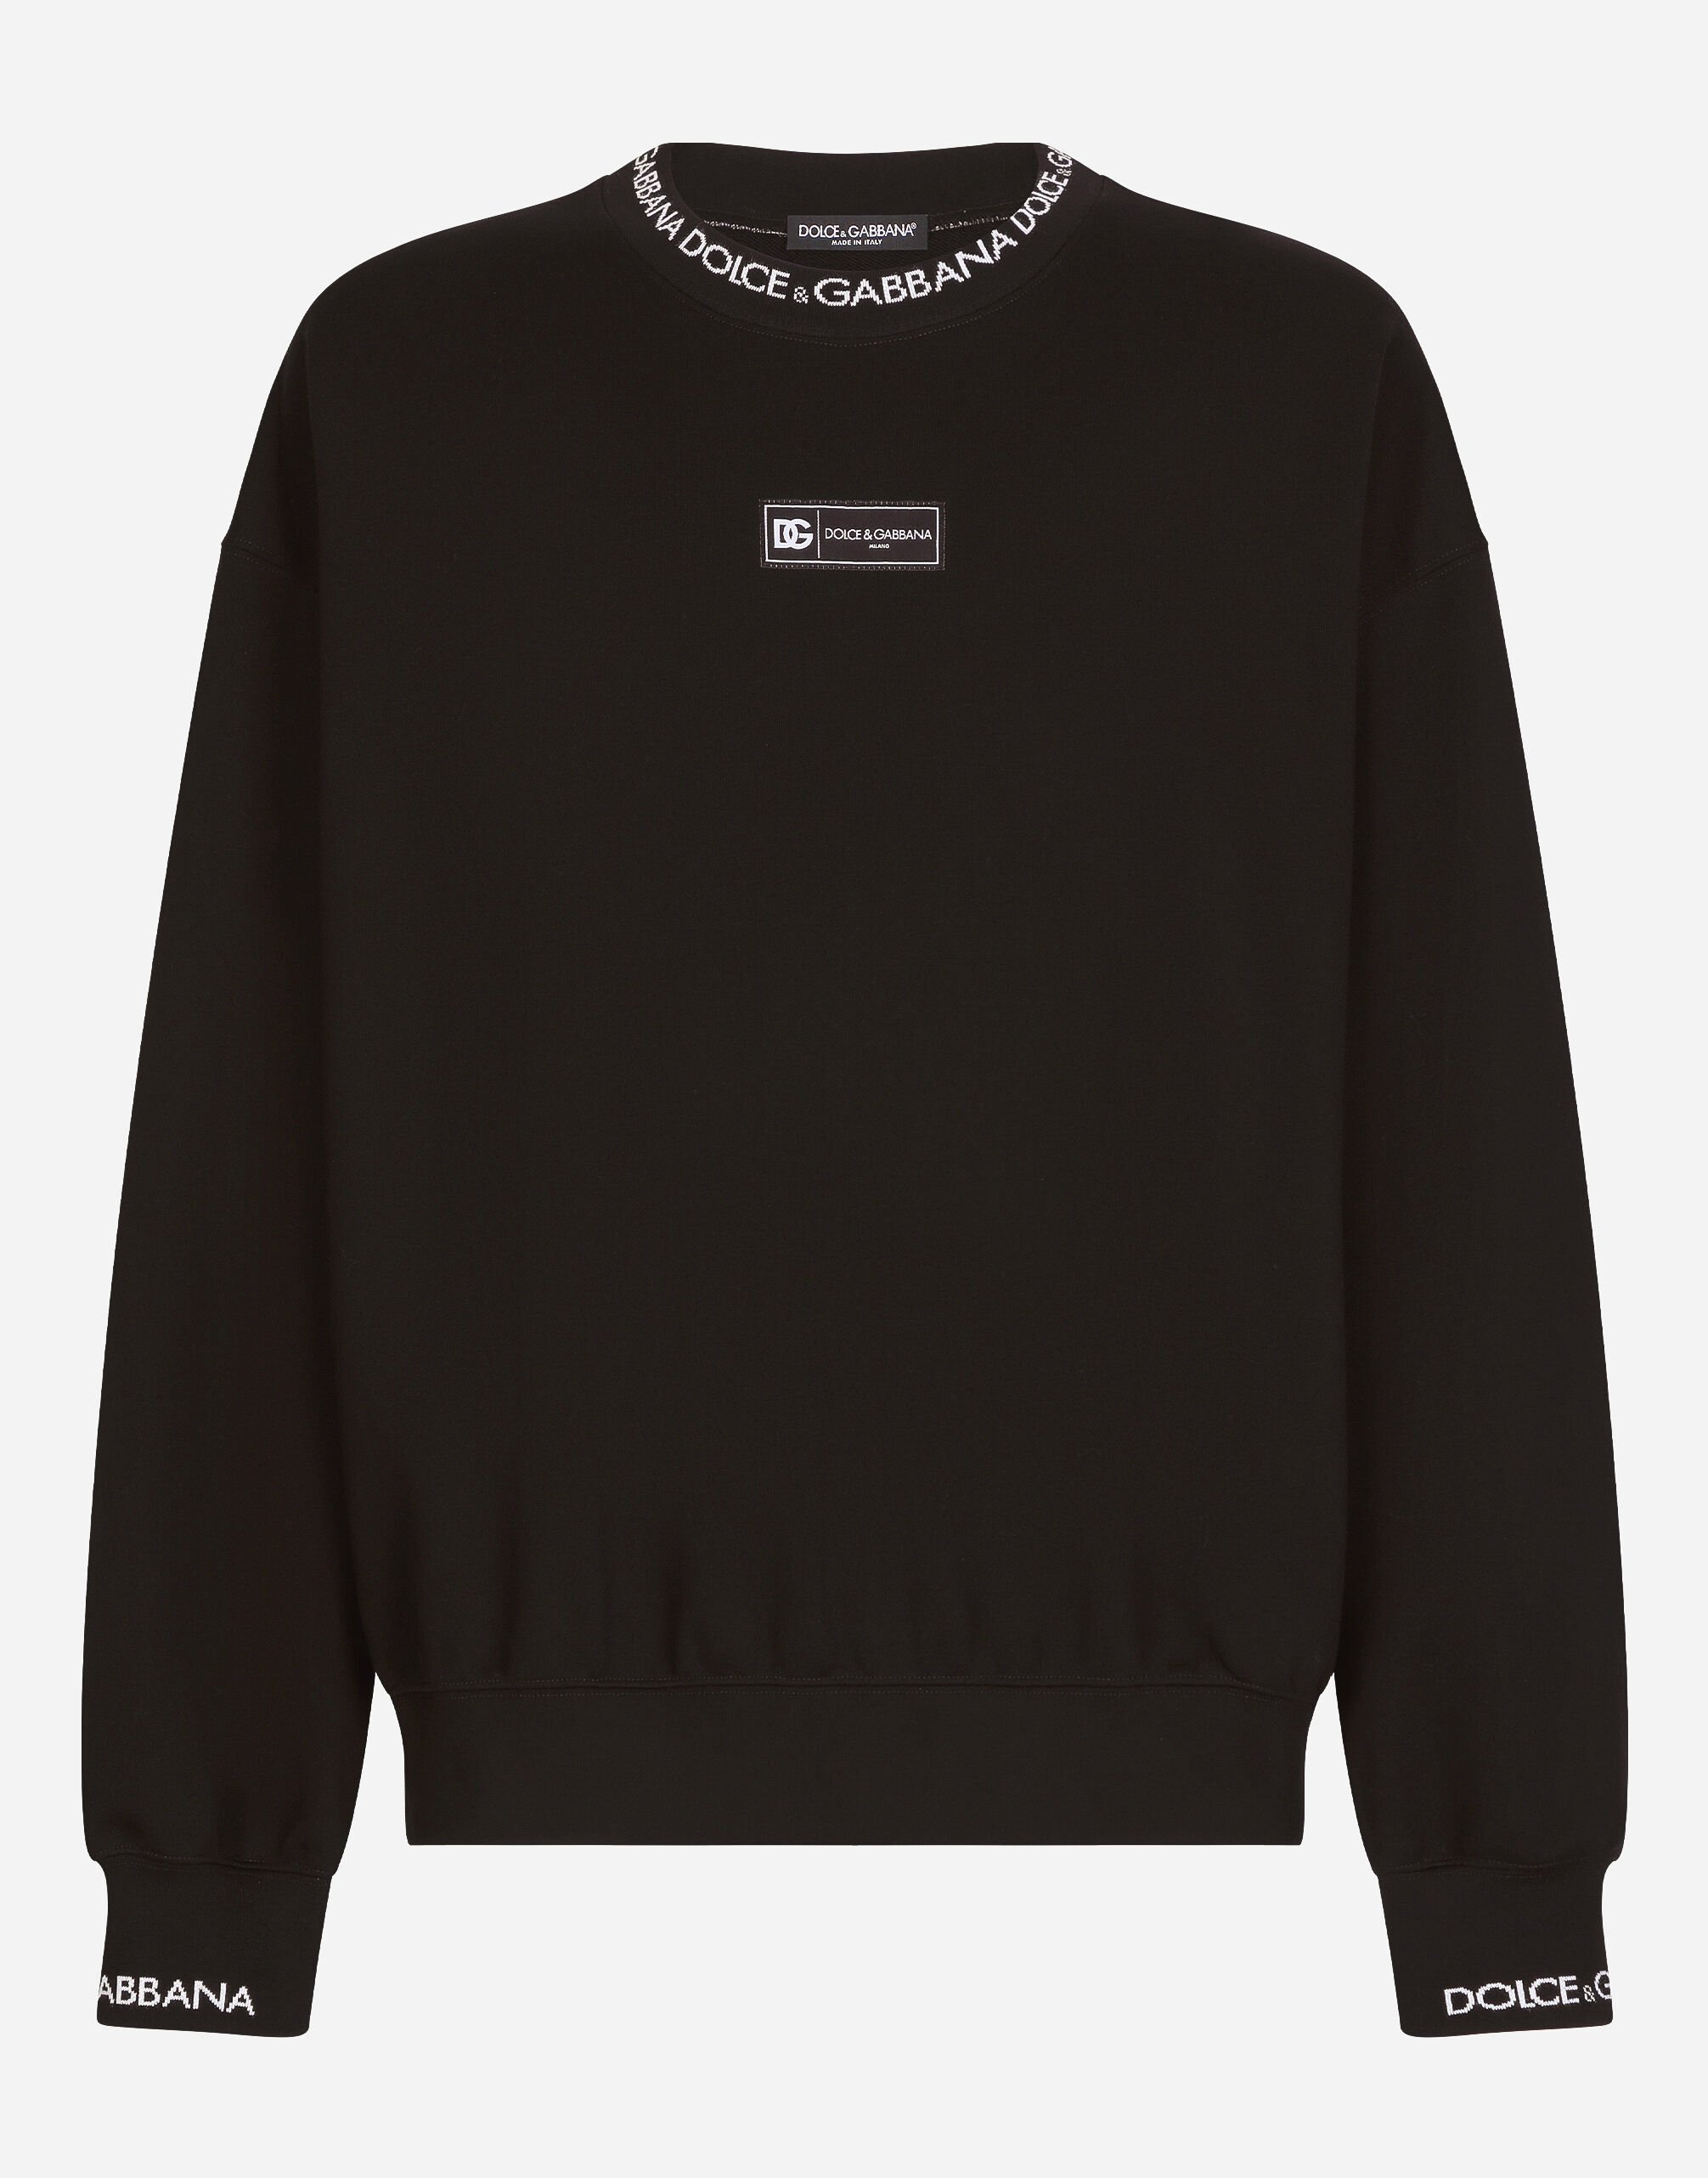 Dolce & Gabbana Round-neck sweatshirt with Dolce&Gabbana logo Beige G9AKPZG7NQI